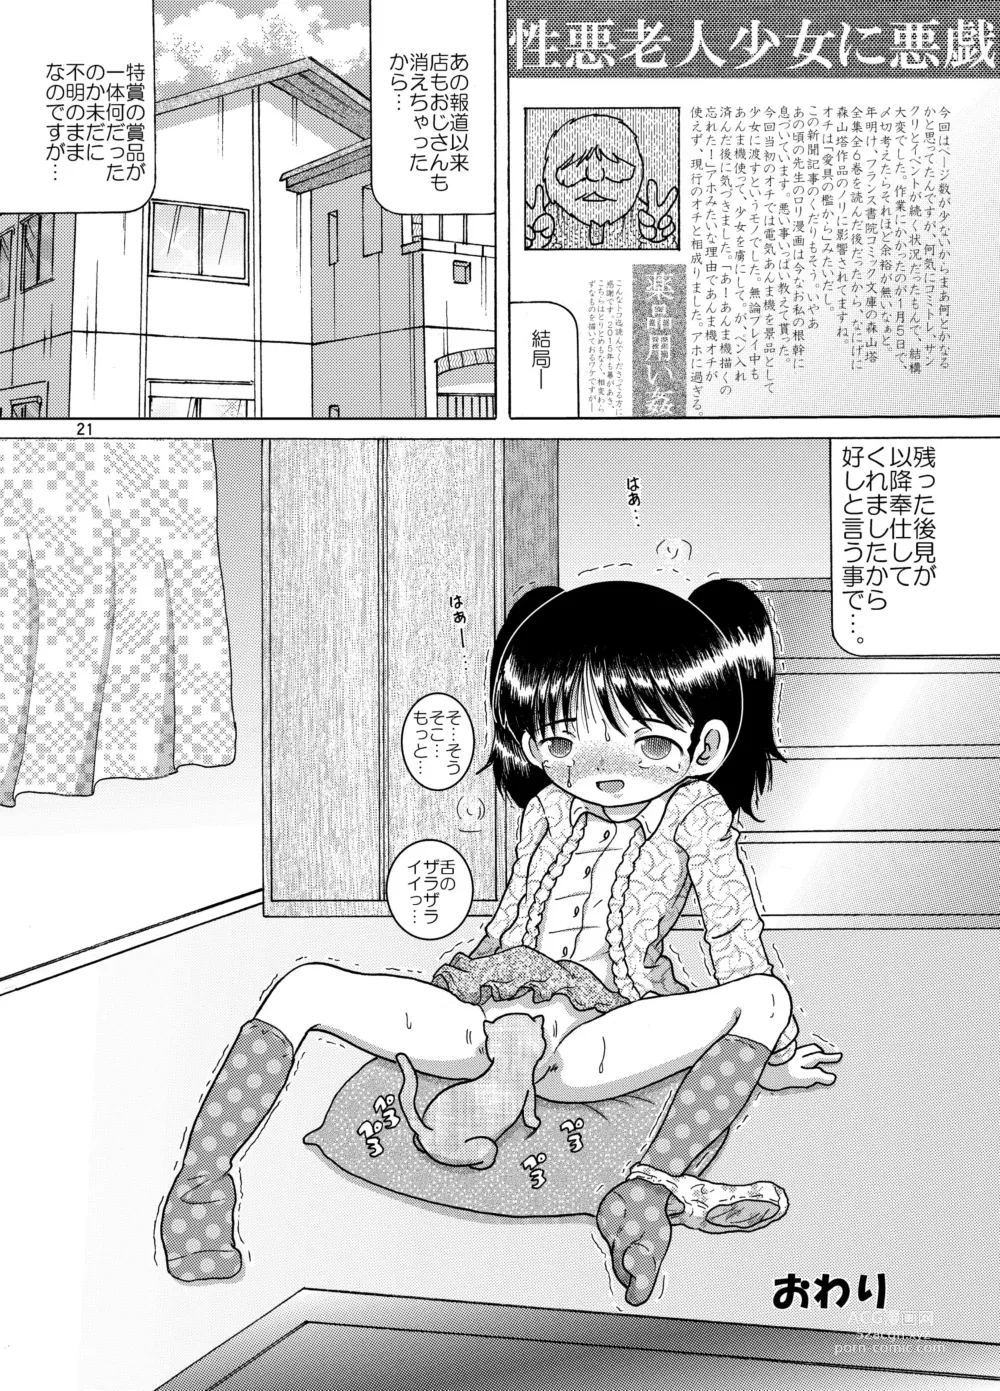 Page 21 of doujinshi Kakesei Amakan